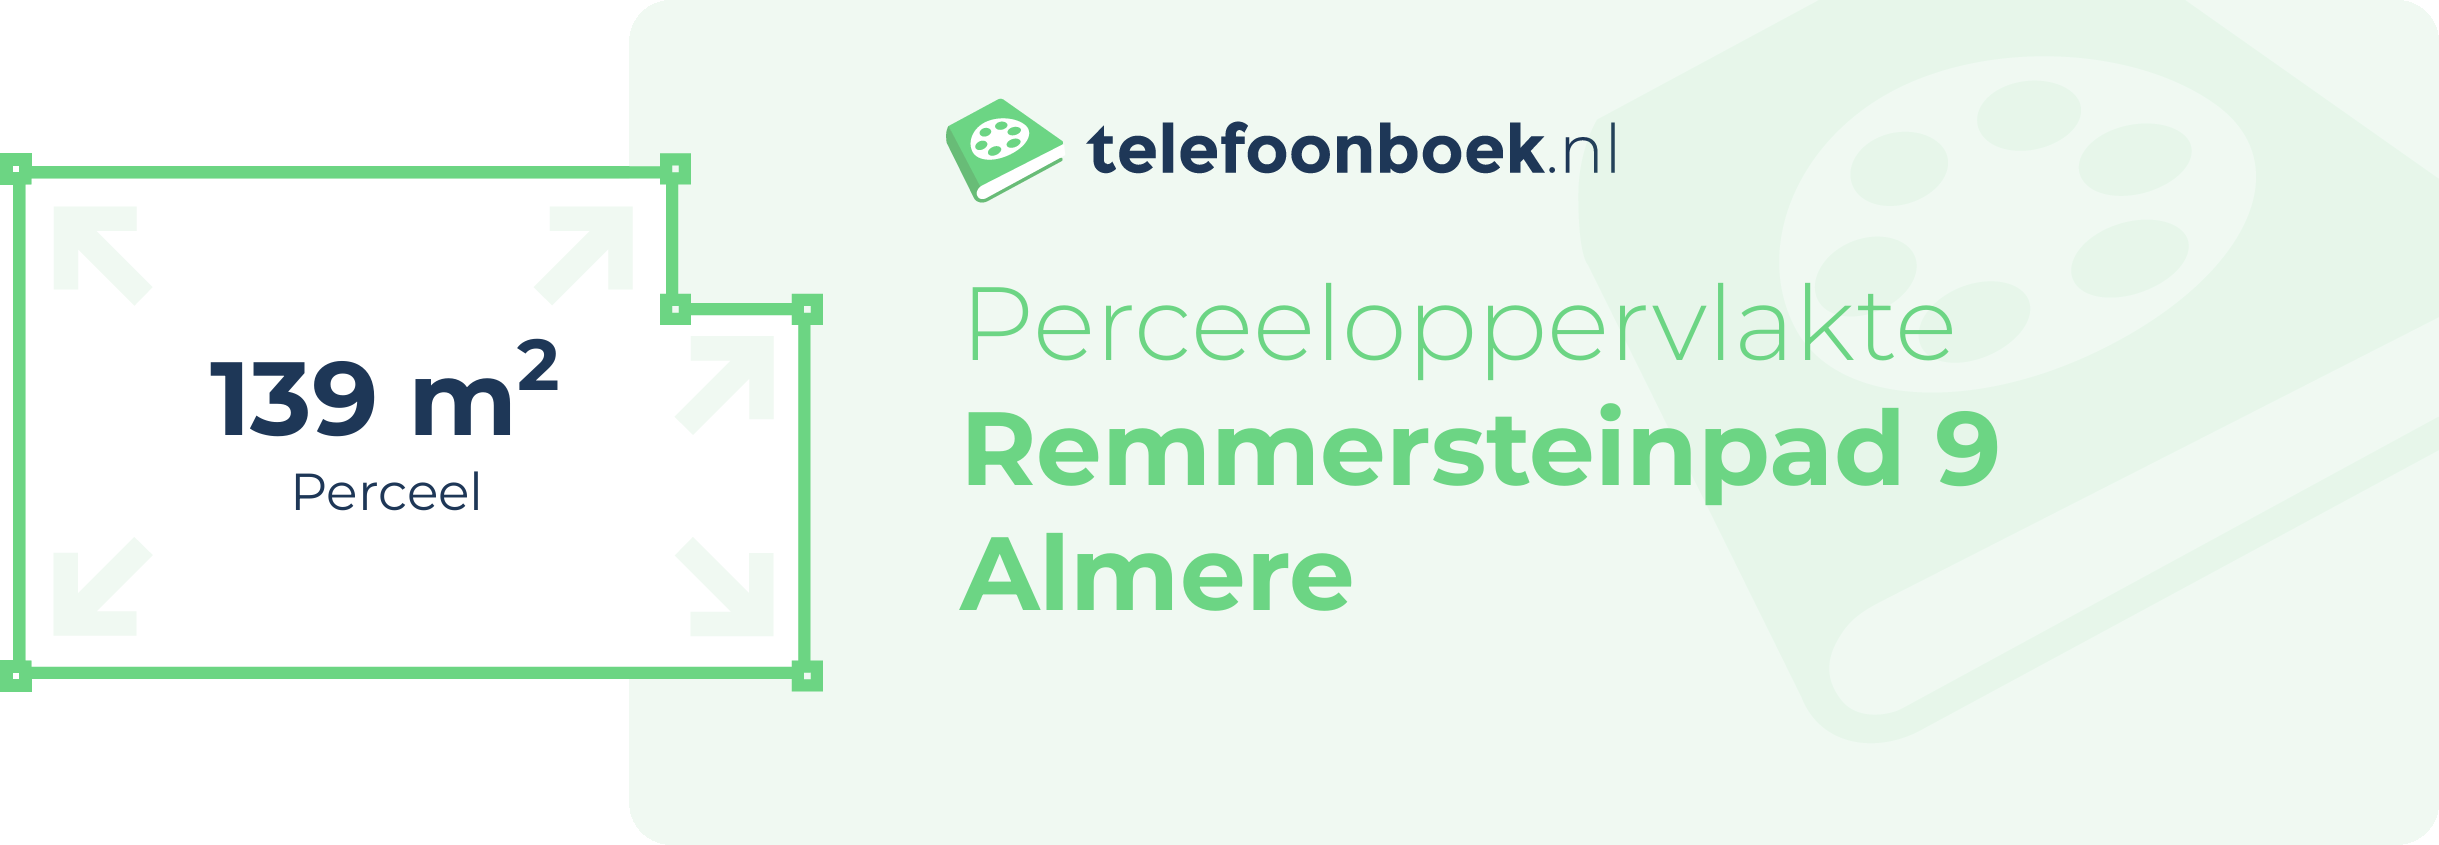 Perceeloppervlakte Remmersteinpad 9 Almere